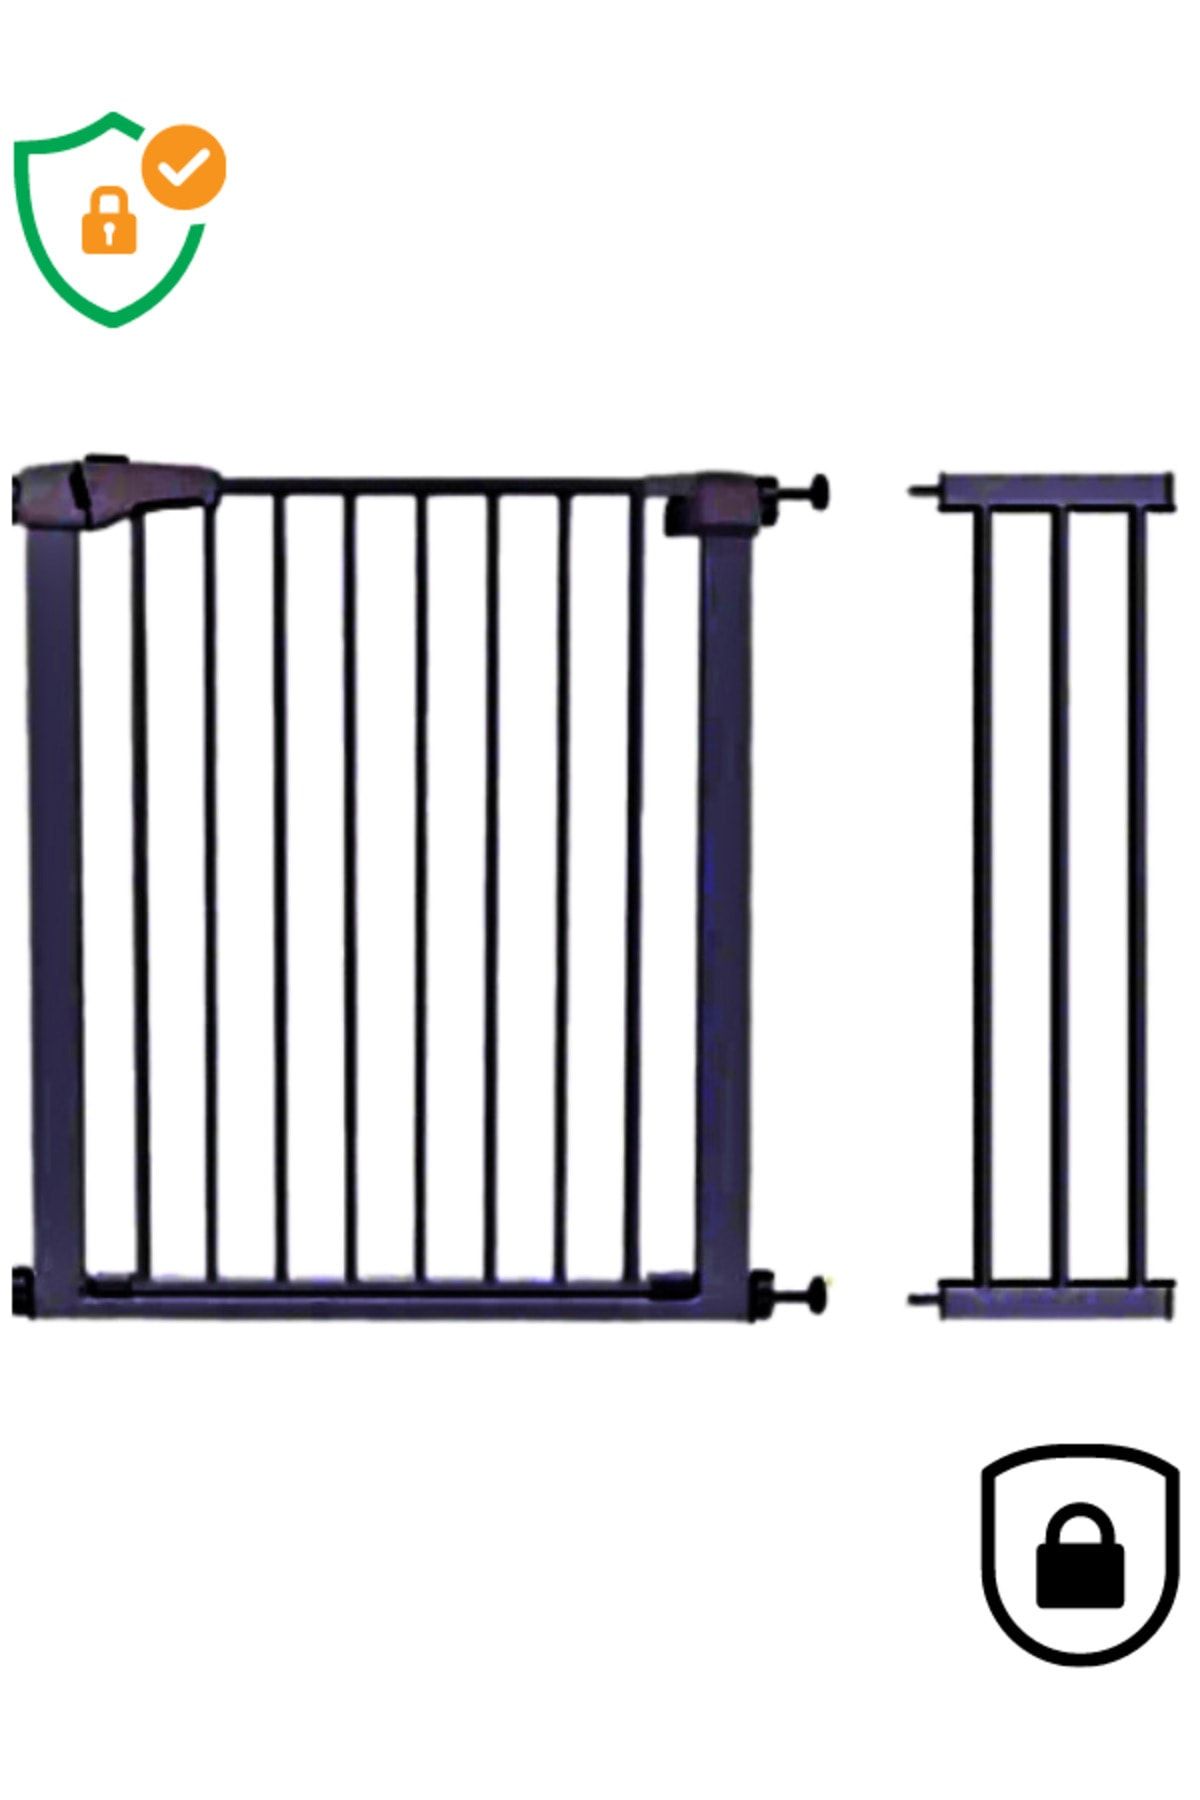 AYVELLA Bebek Çocuk Güvenlik Kapısı 75 - 96 cm Genişllik Bariyer Çift Kilitli Merdiven Korumalığı Emniyetli